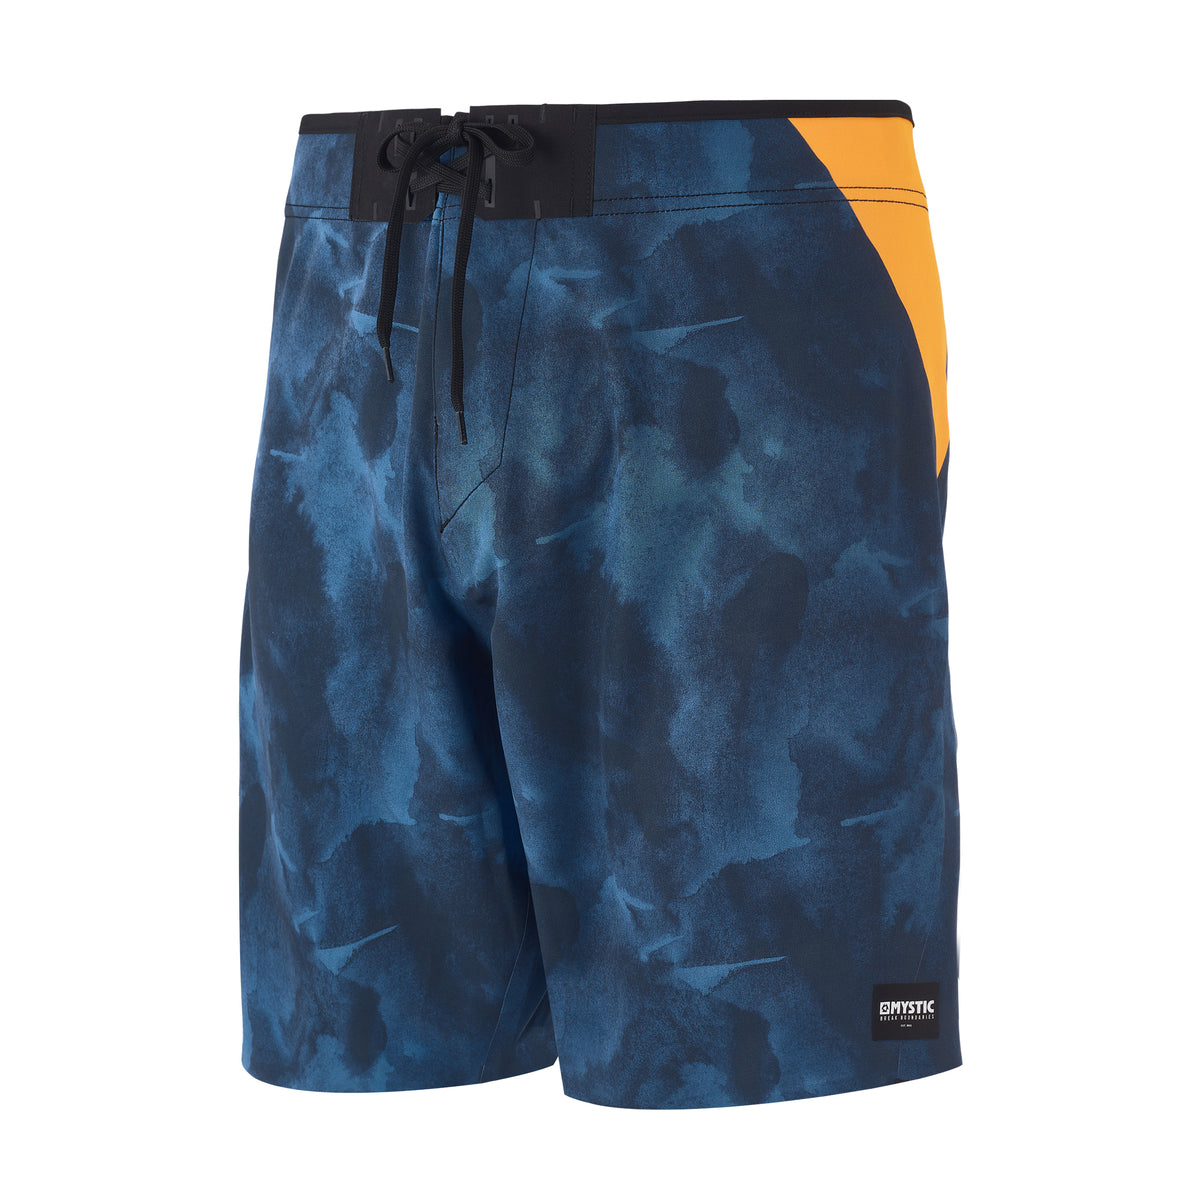 MYSTIC STONE BOARDSHORT NAVY swim shorts